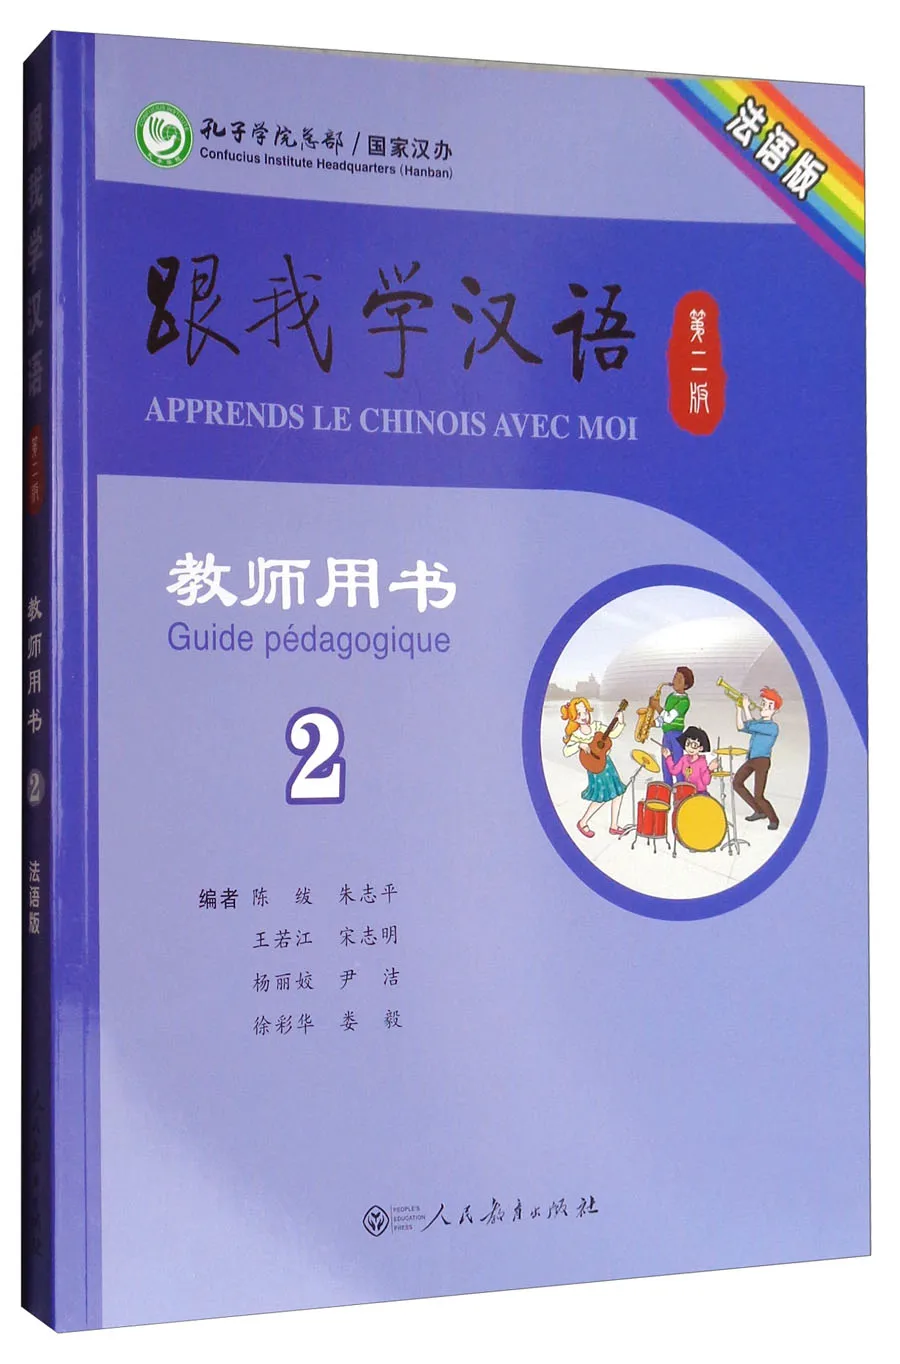 

Apprendre le chinois avec moi livre du professeur 2e édition volume 2 édition française